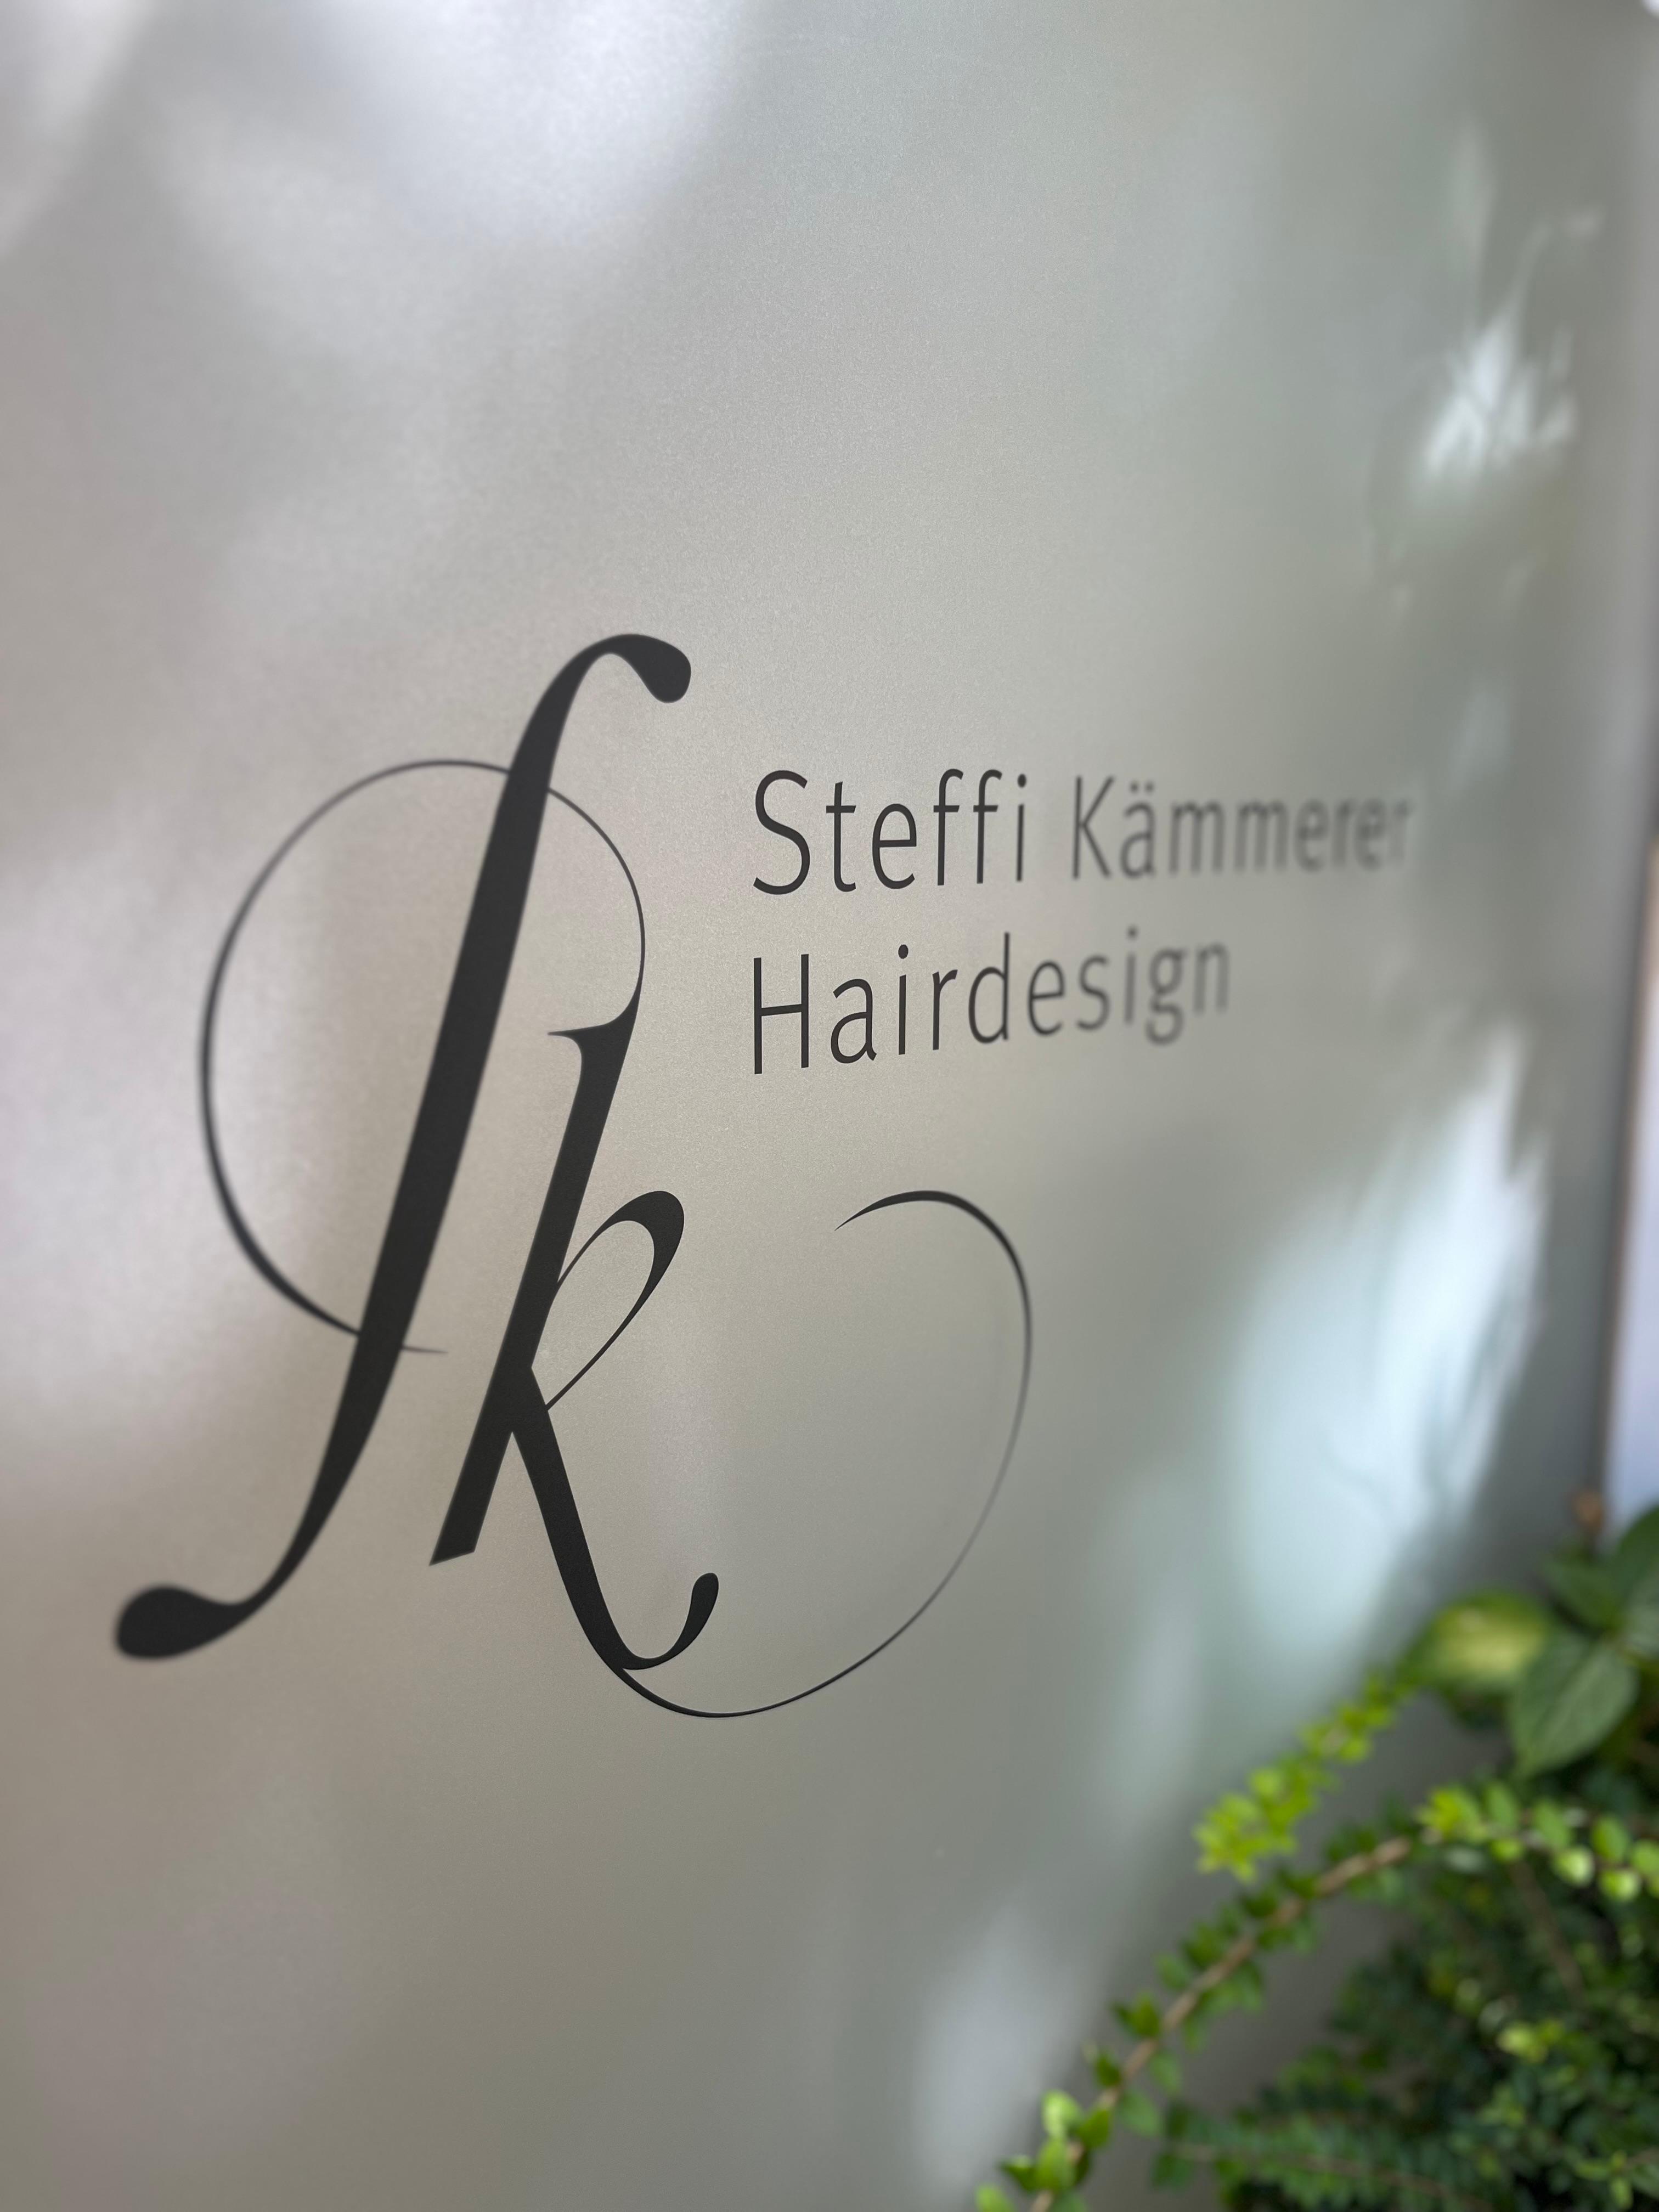 SK-Hairdesign in München | Nur mit Terminvereinbarung!, Sommerstr. 2 in München